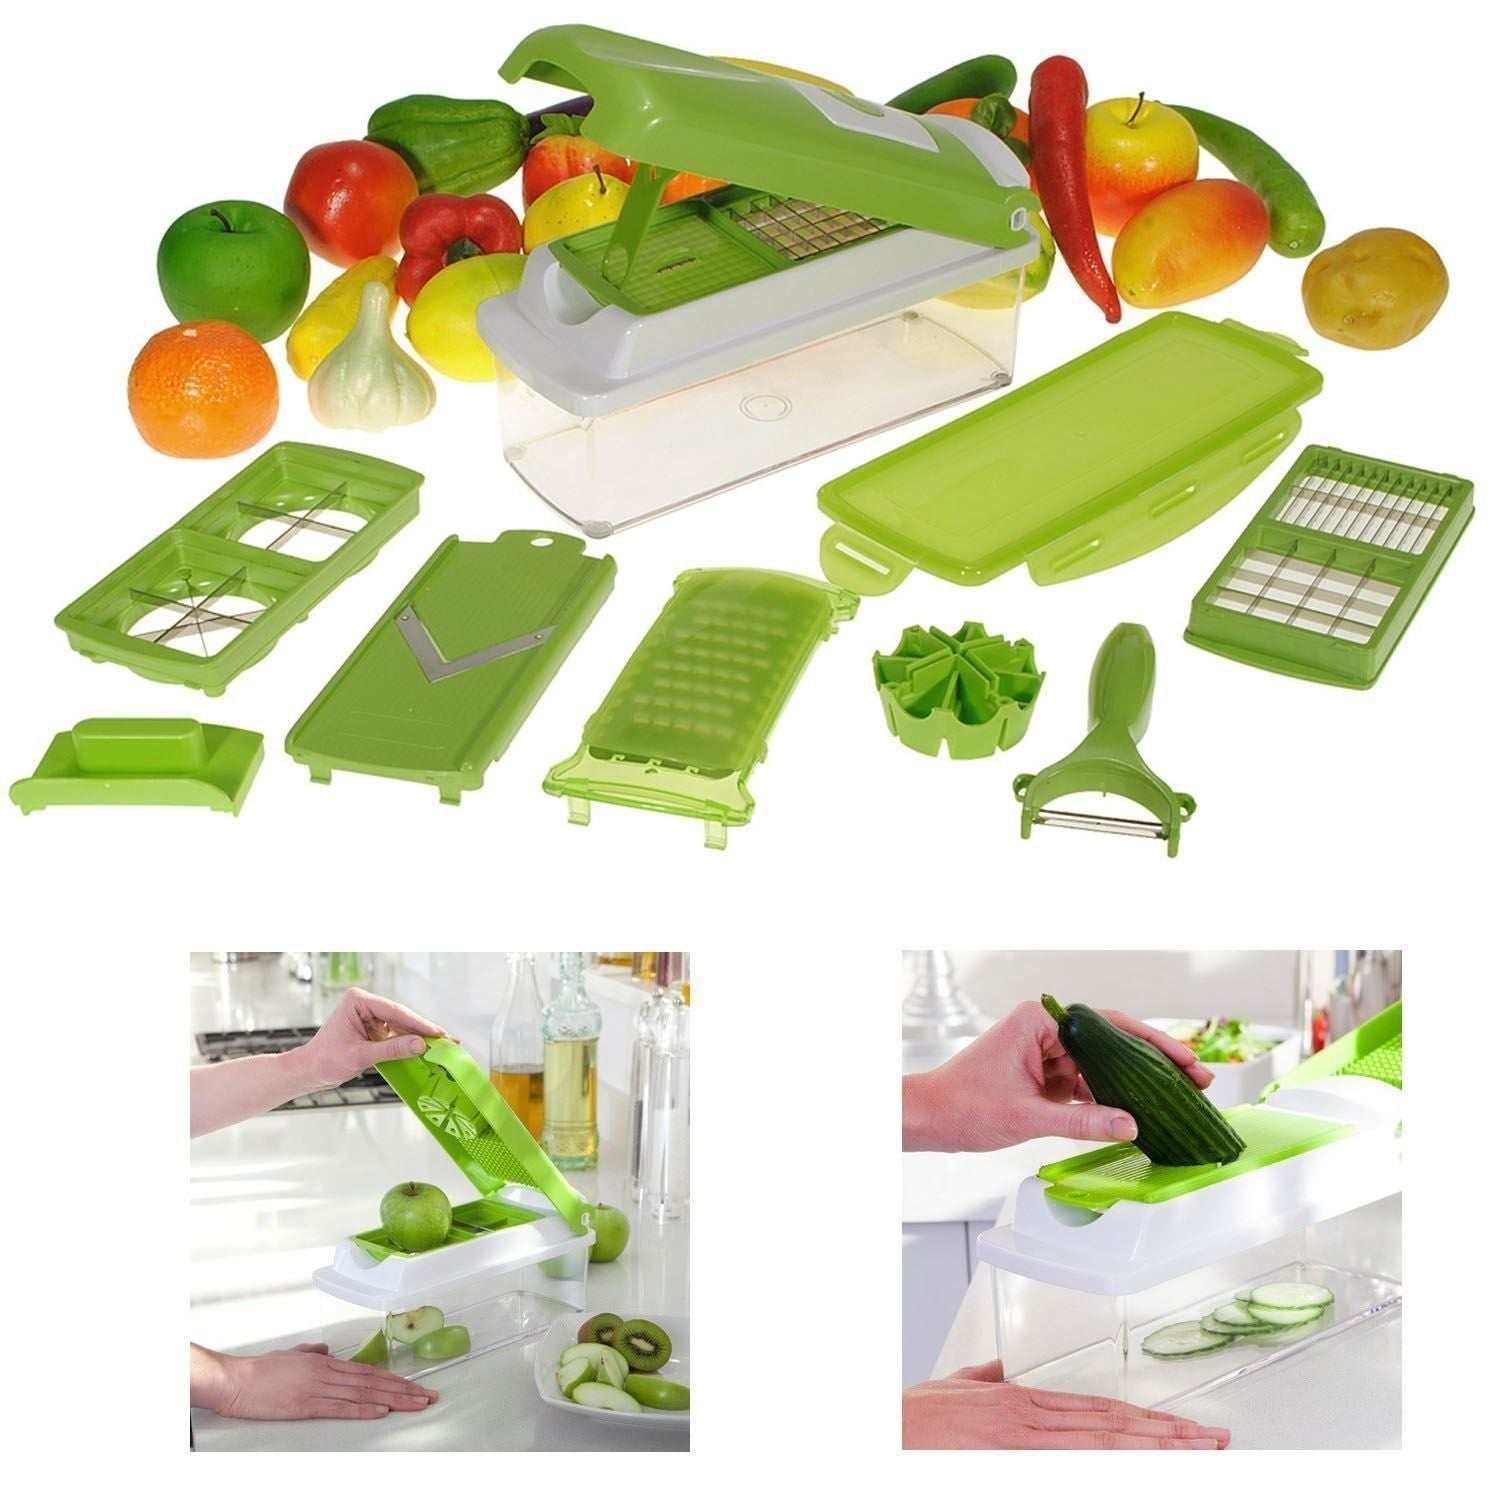 https://alabhy.com/cdn/shop/products/Nicer-Dicer-Plus-12-Pcs-Salad-Vegetable-Fruit-Slicer-Shredder-Cutter-Peeler-Chopper-Kitchen-Tool-Set-1_1024x1024@2x.jpg?v=1605784054